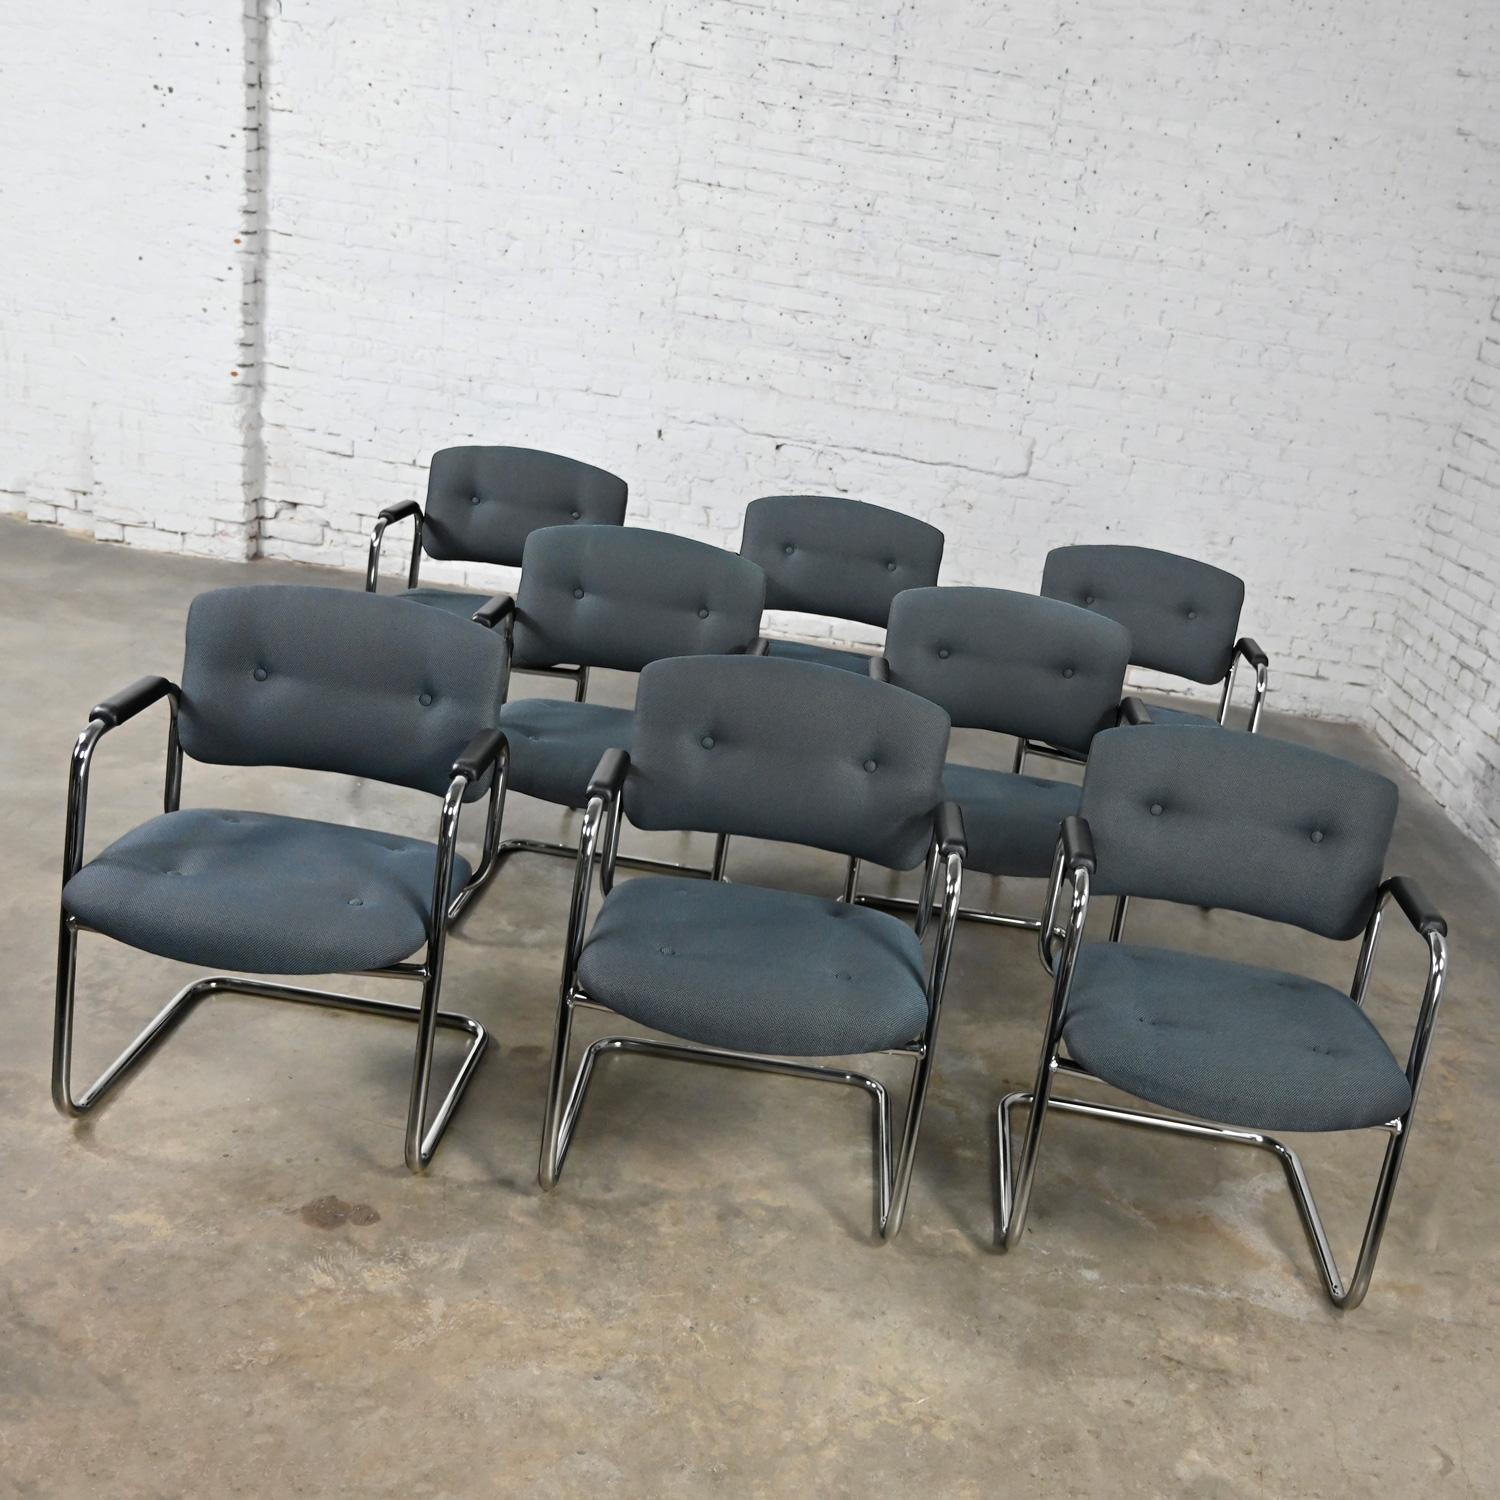 Superbes chaises cantilever vintage grises et chromées de United Chair Company dans le style de Steelcase, ensemble de 8. Composées d'un piétement luge chromé, d'accoudoirs en plastique noir et de leur tissu tweed gris d'origine avec des détails de